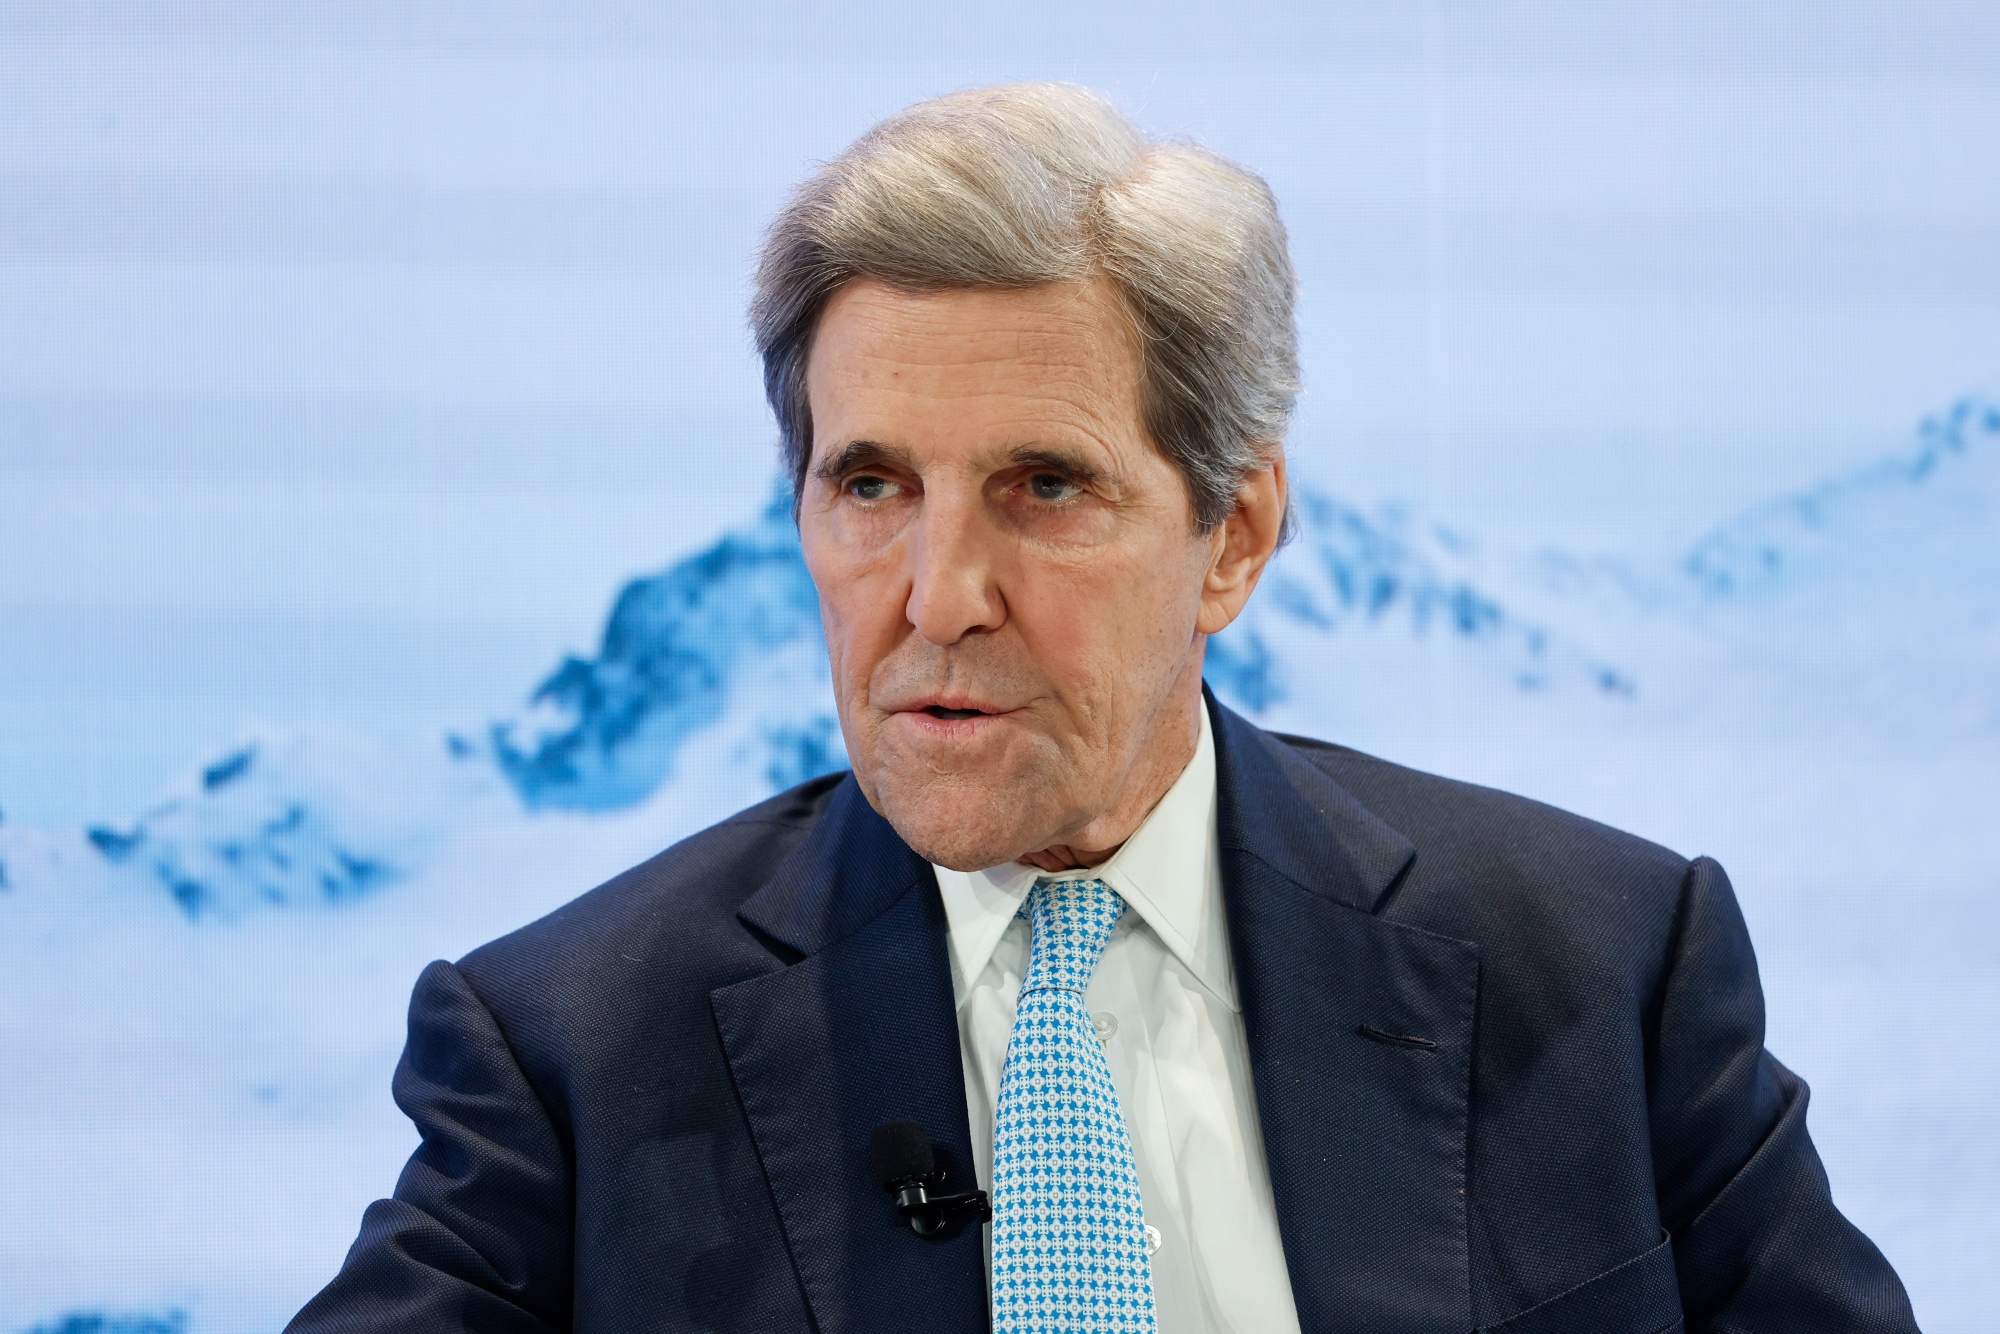 John Kerry in Davos on Jan. 18.